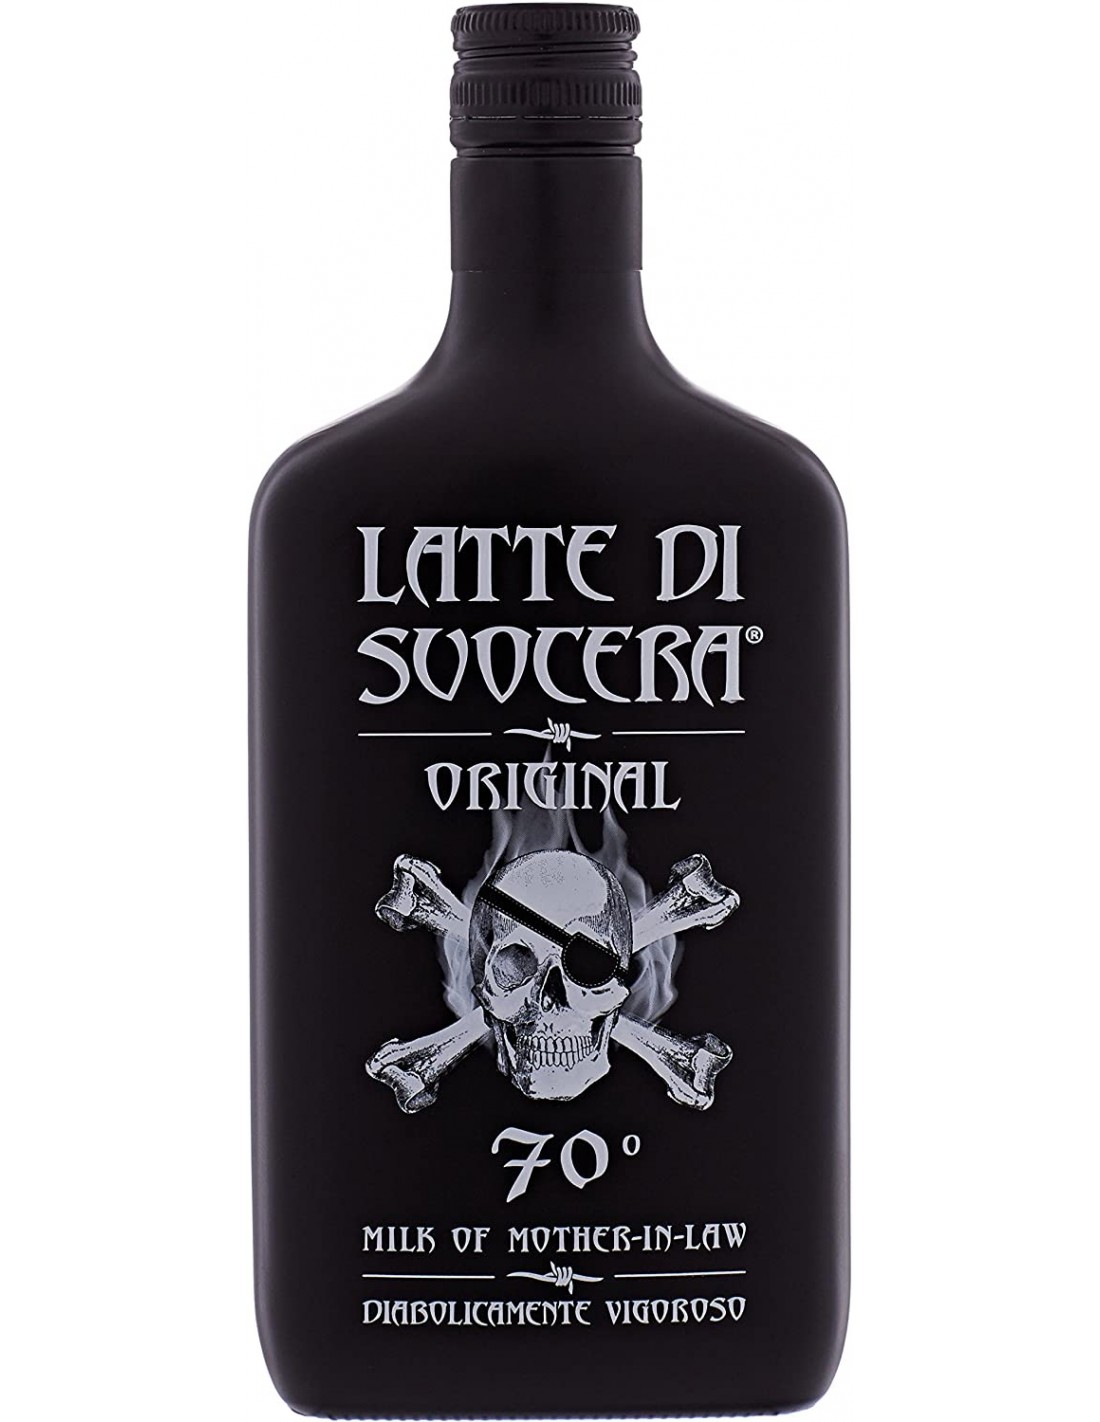 Lichior de plante Latte Di Suocera Original, 70% alc., 0.7L, Italia alcooldiscount.ro